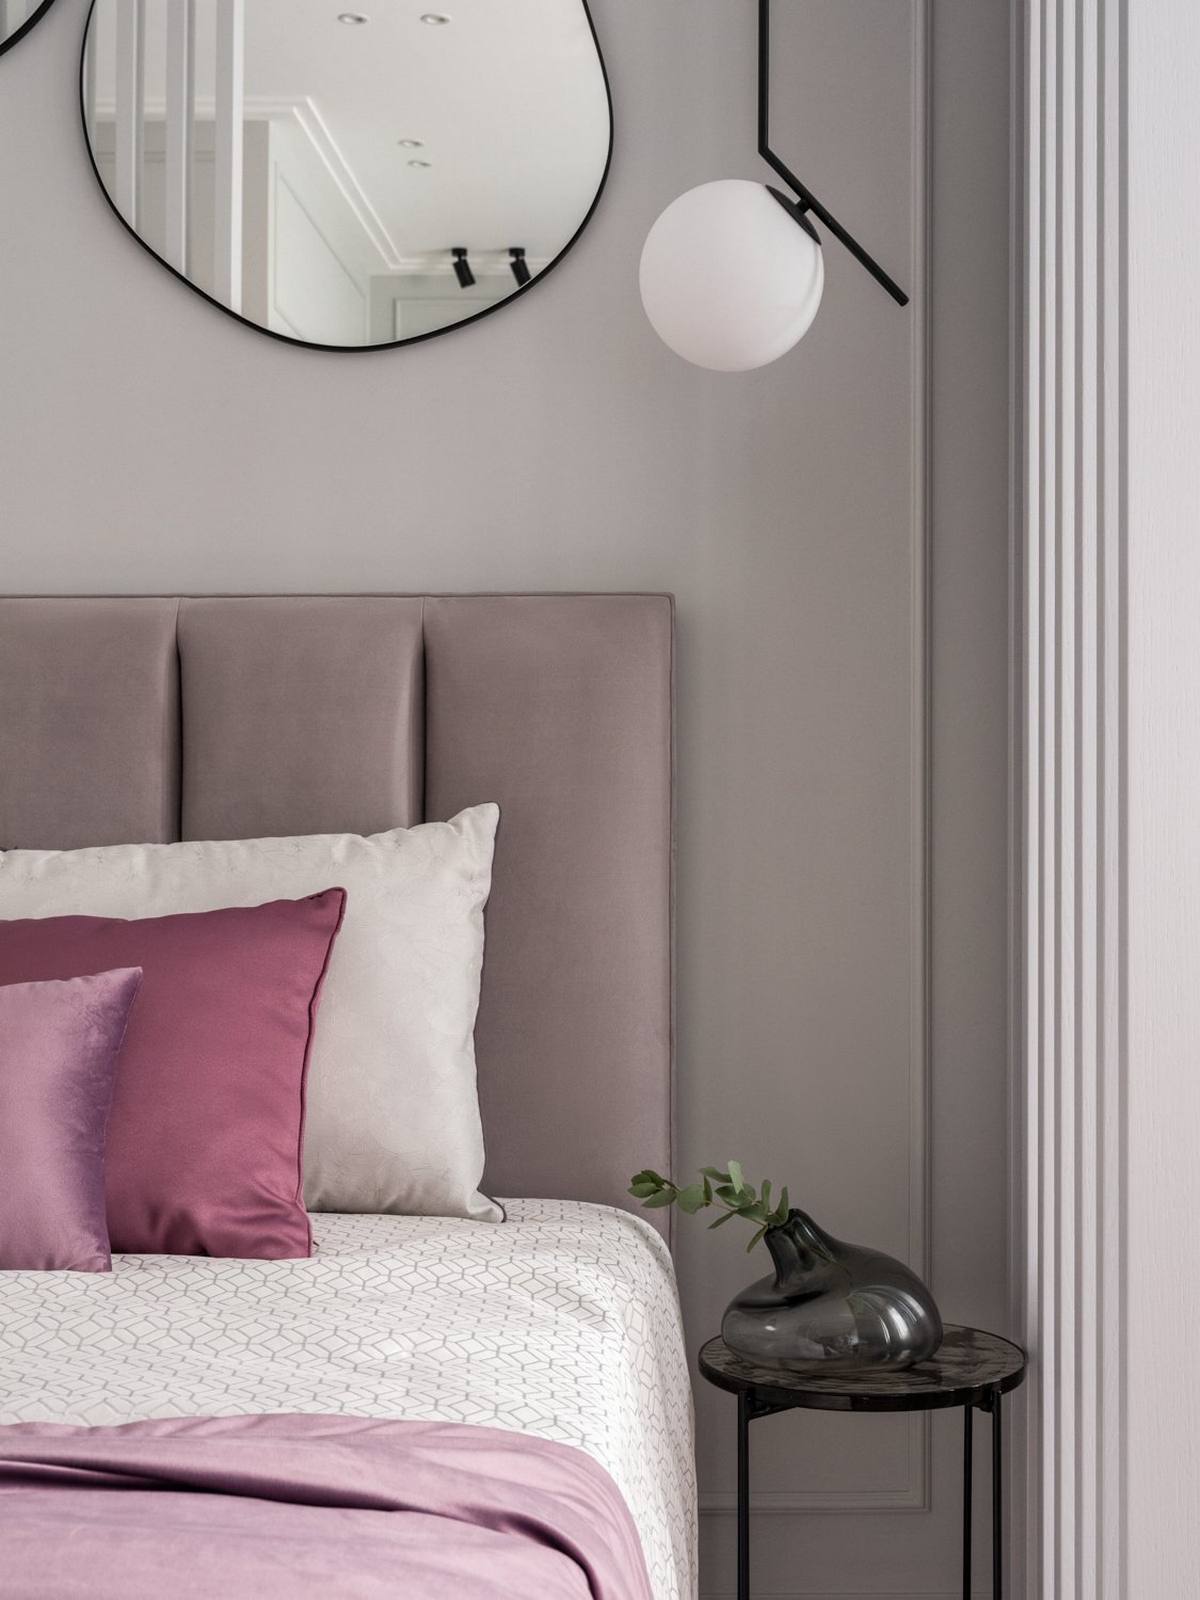 Gương soi trang trí bức tường phòng ngủ vô cùng ấn tượng, kết hợp táp đầu giường thiết kế đơn giản nhưng đặt lọ hoa thủy tinh độc lạ cho không gian thêm tinh tế.